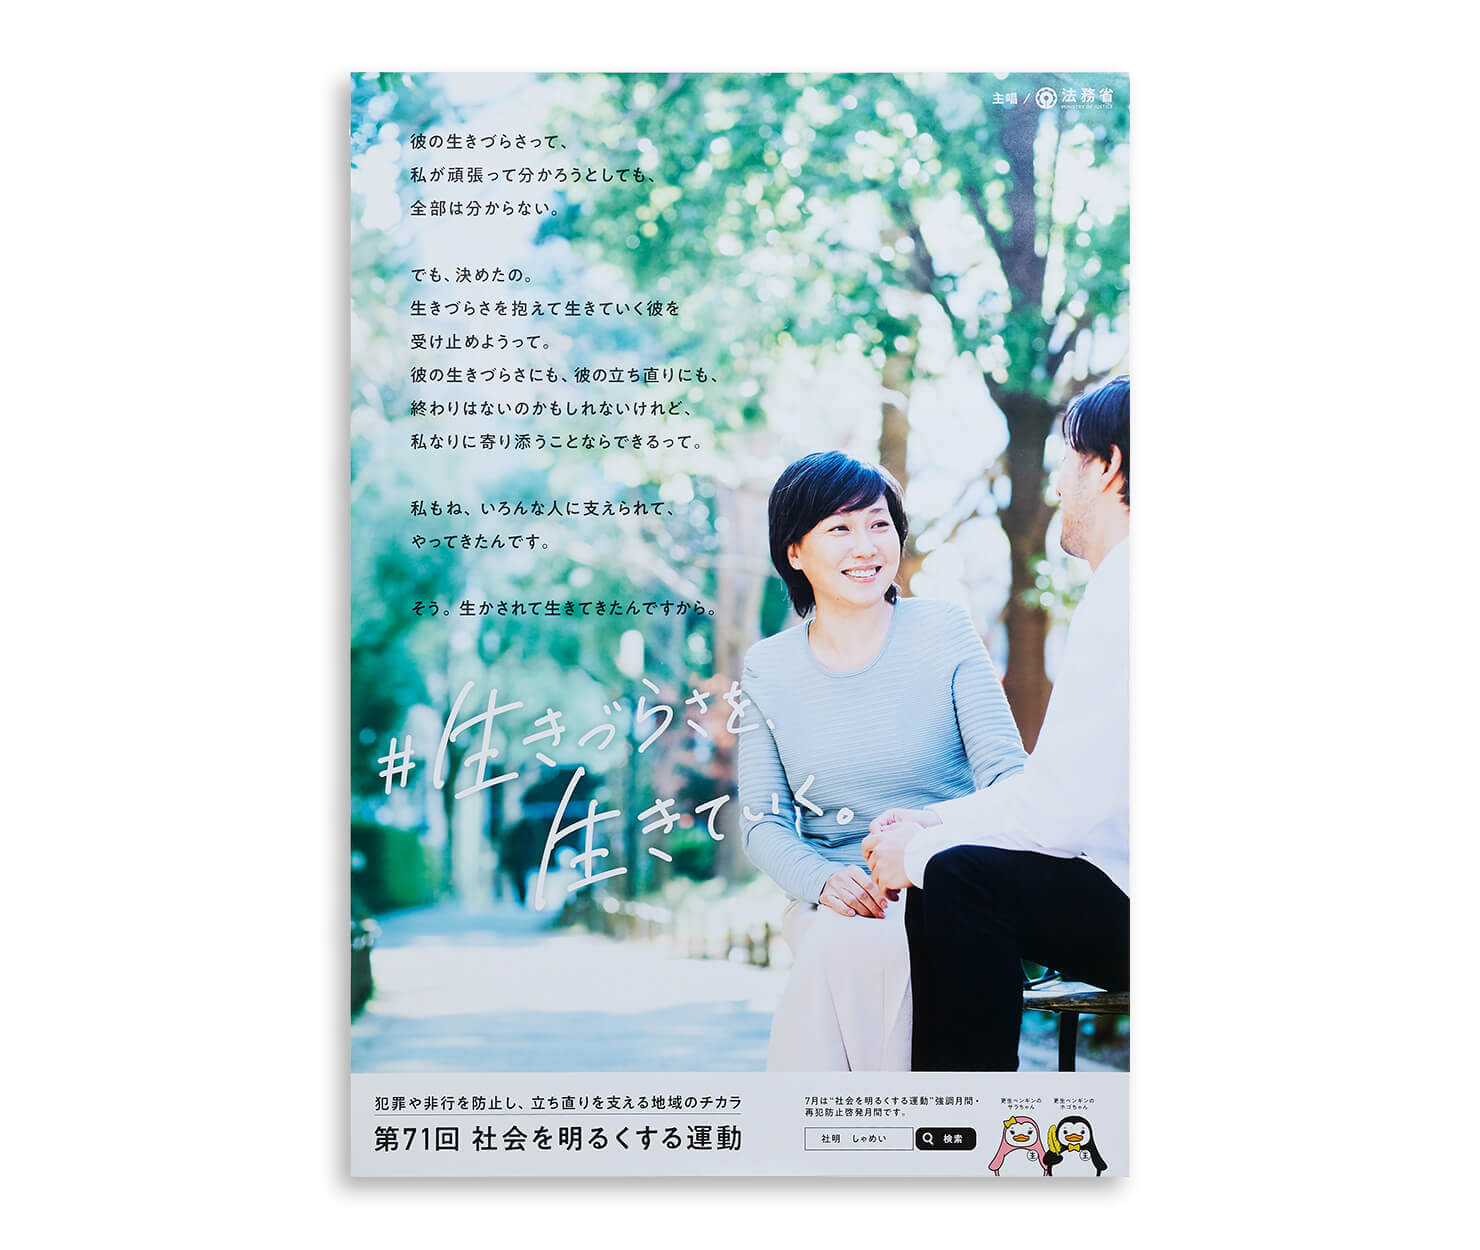 ポスターの写真。ビジュアル表現は写真を使用している。緑に囲まれた遊歩道のベンチに座る男性に、女性が微笑む様子。コピーとともにデザインされている。